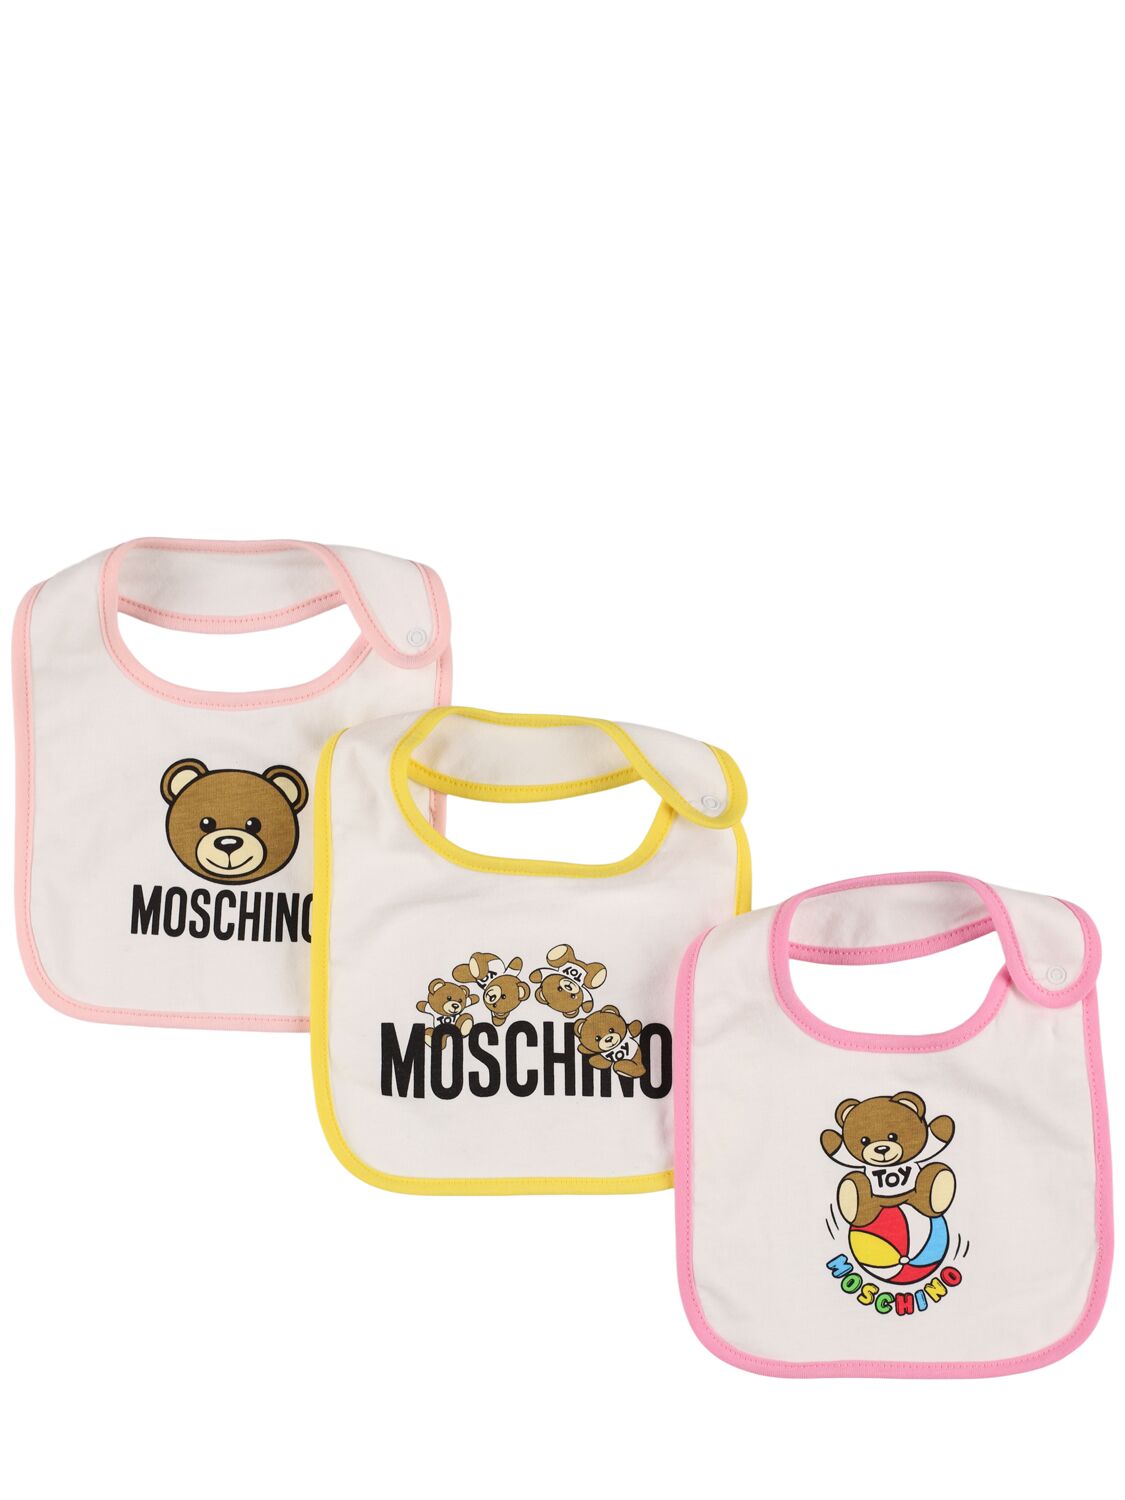 Moschino Kids' Set: 3 Lätze Aus Baumwolljersey In Pink